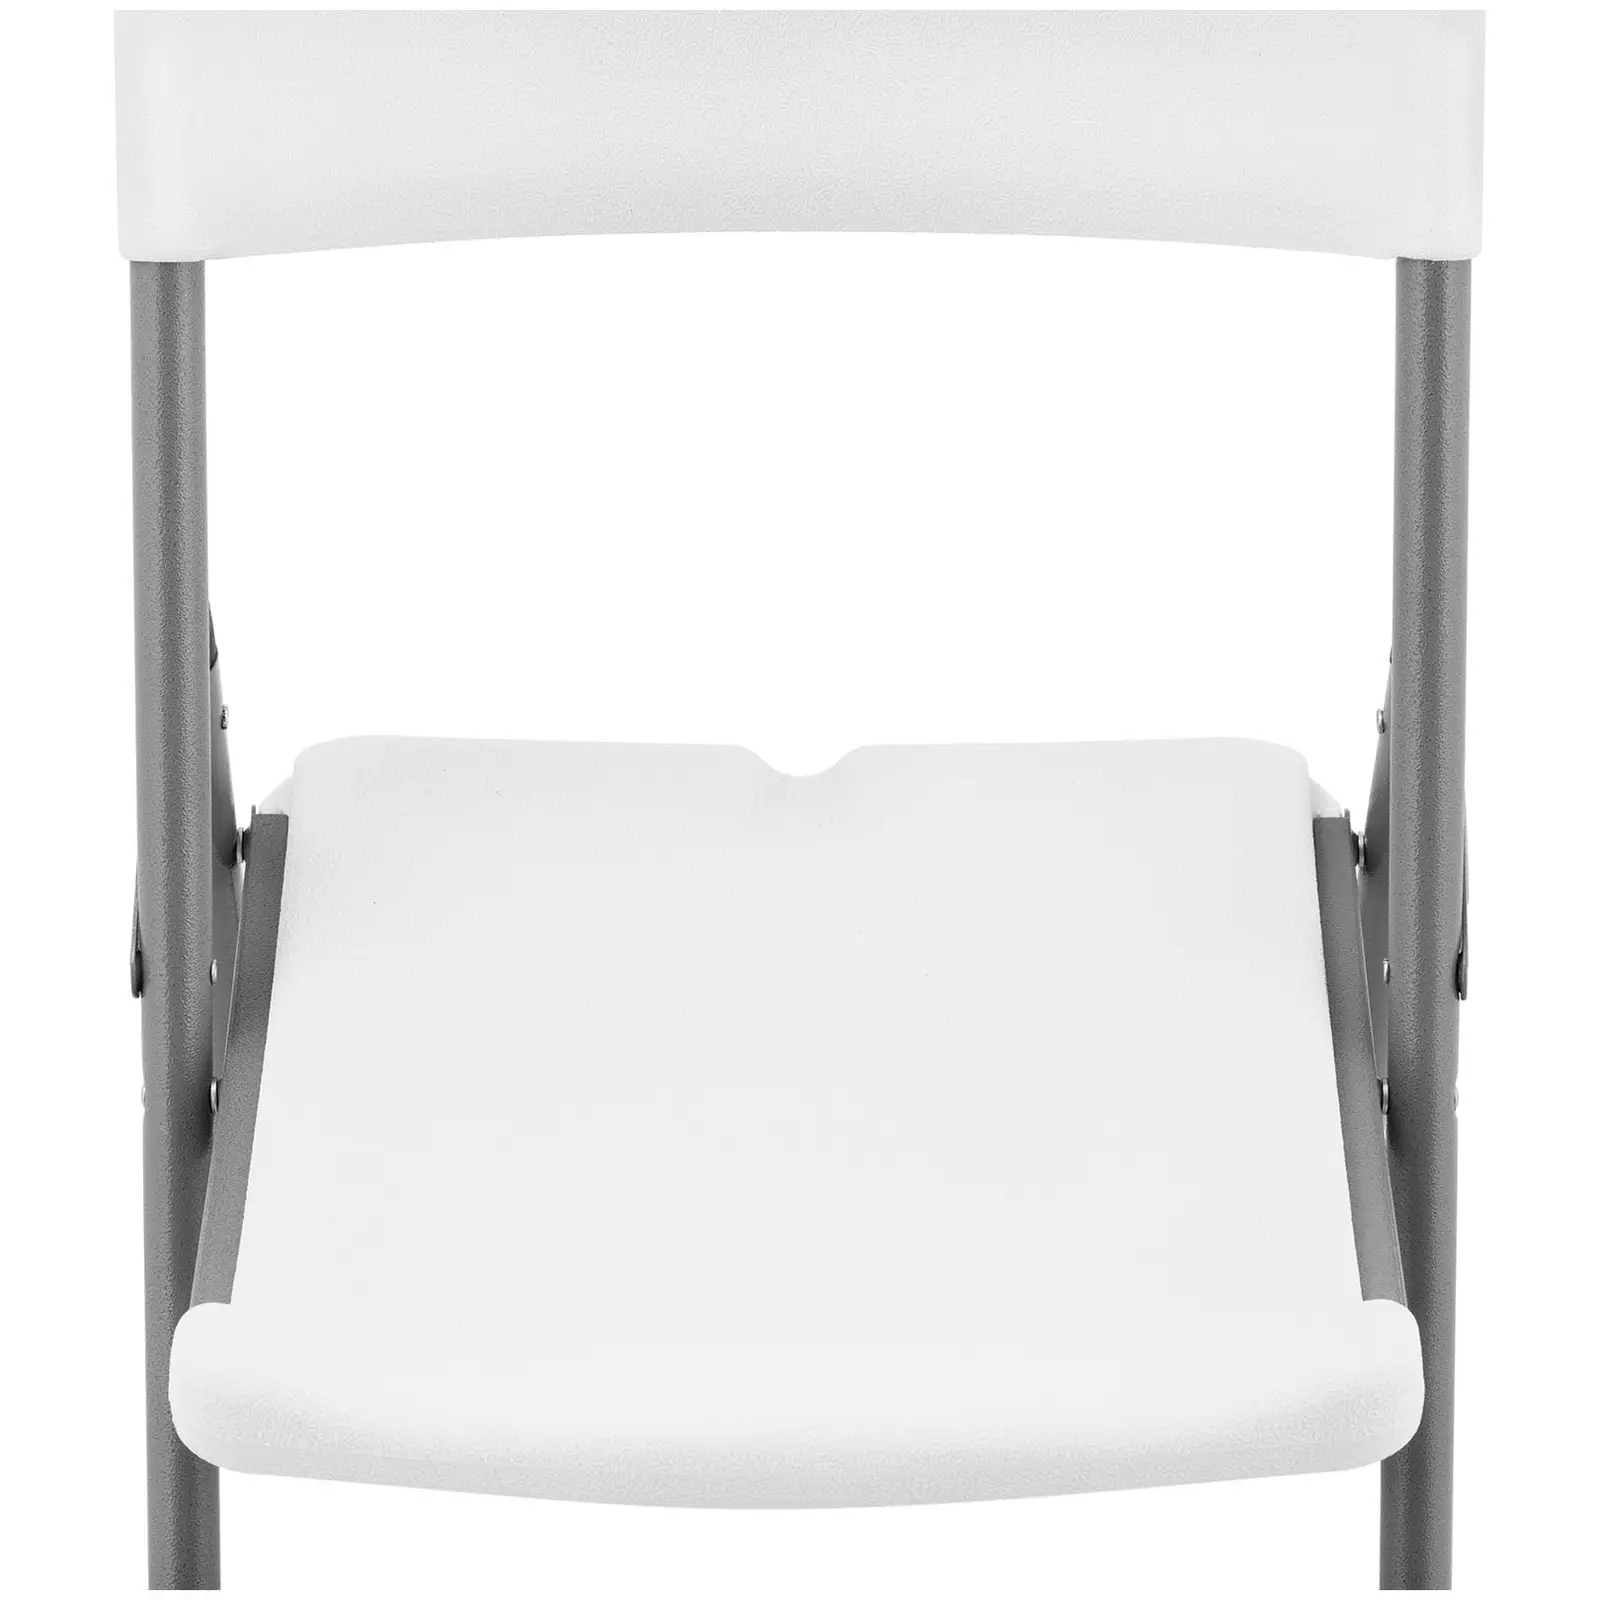 Zložljivi stoli - komplet 4 - Royal Catering - 180 kg - sedežna površina: 40 x 38 cm - beli